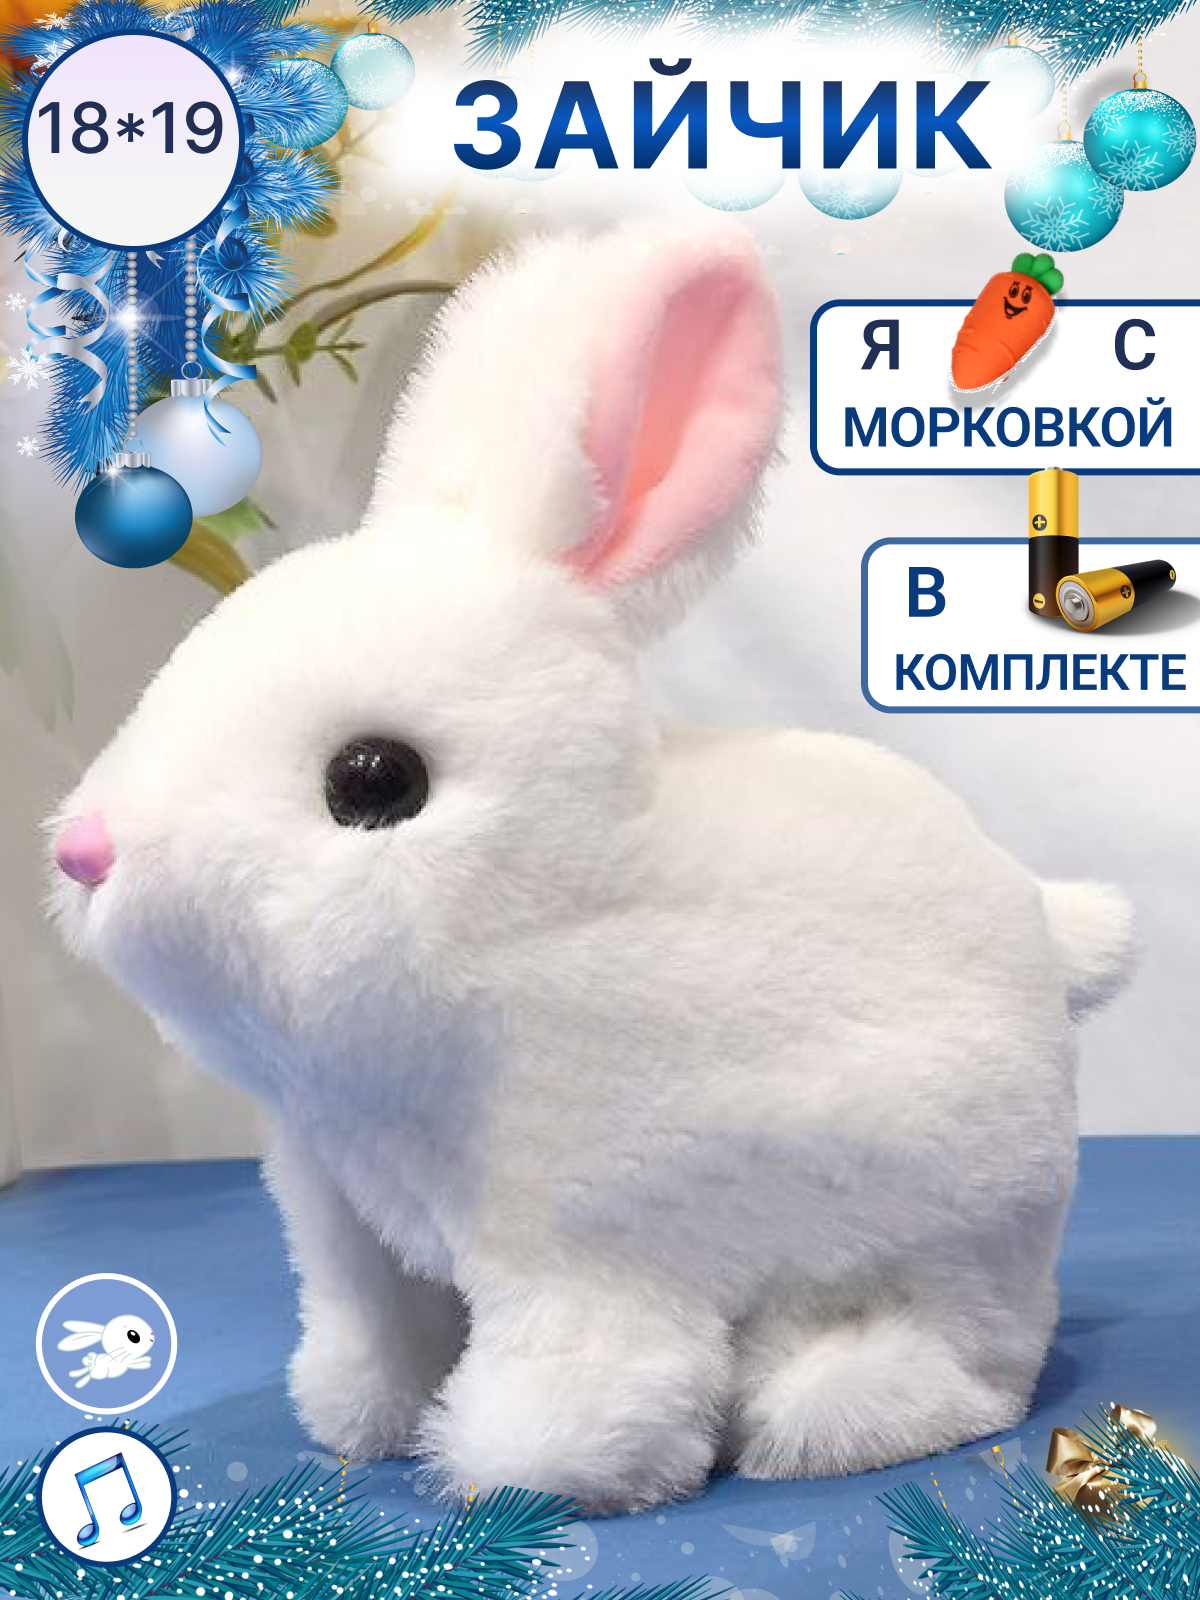 Игрушка интерактивная мягкая FAVORITSTAR DESIGN Пушистый зайчик белый с морковкой - фото 1